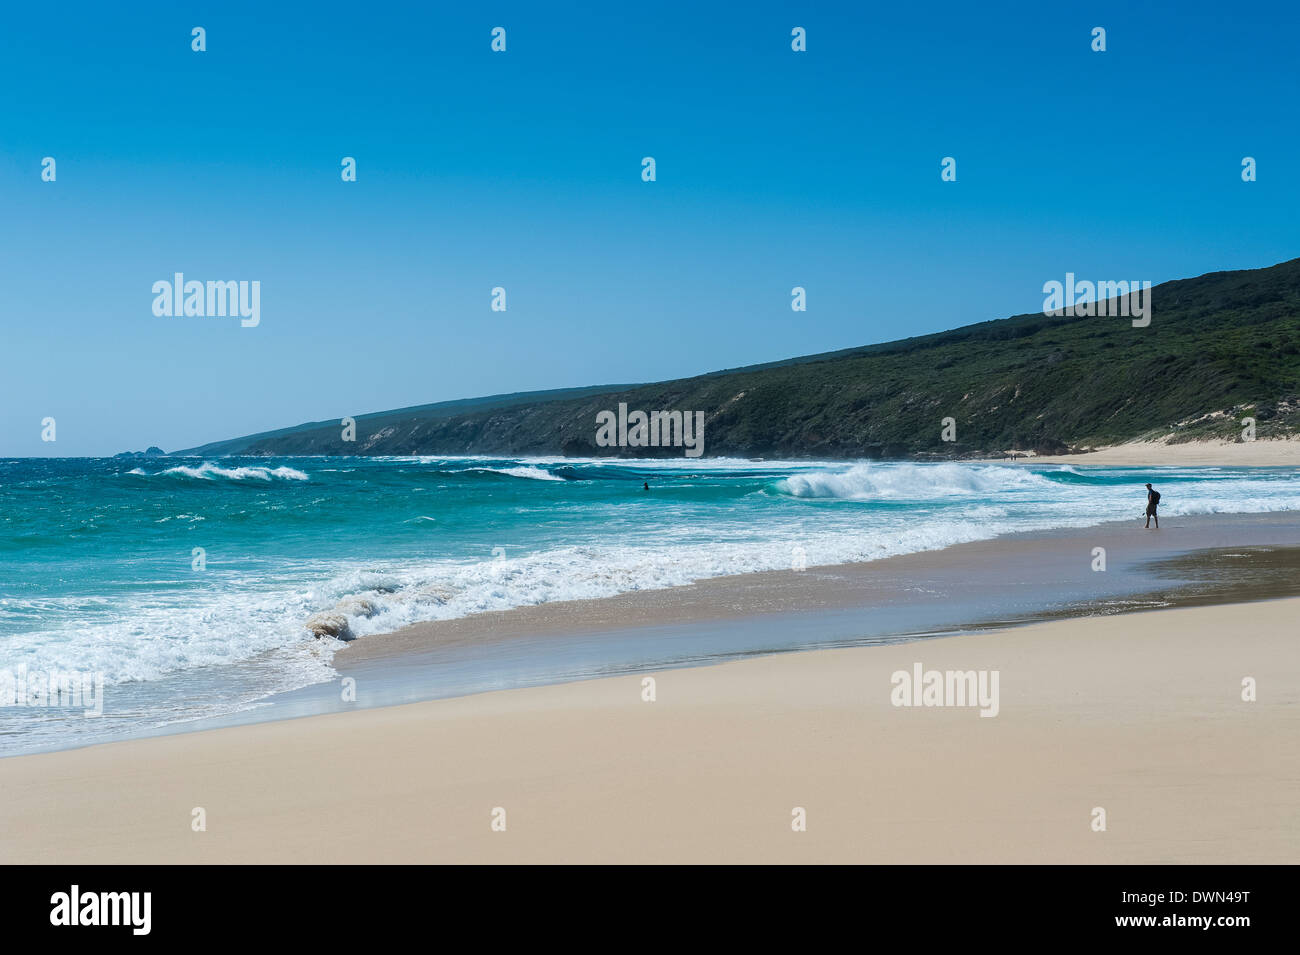 La sabbia bianca e acqua turchese Vicino Fiume Margaret, Australia occidentale, Australia Pacific Foto Stock